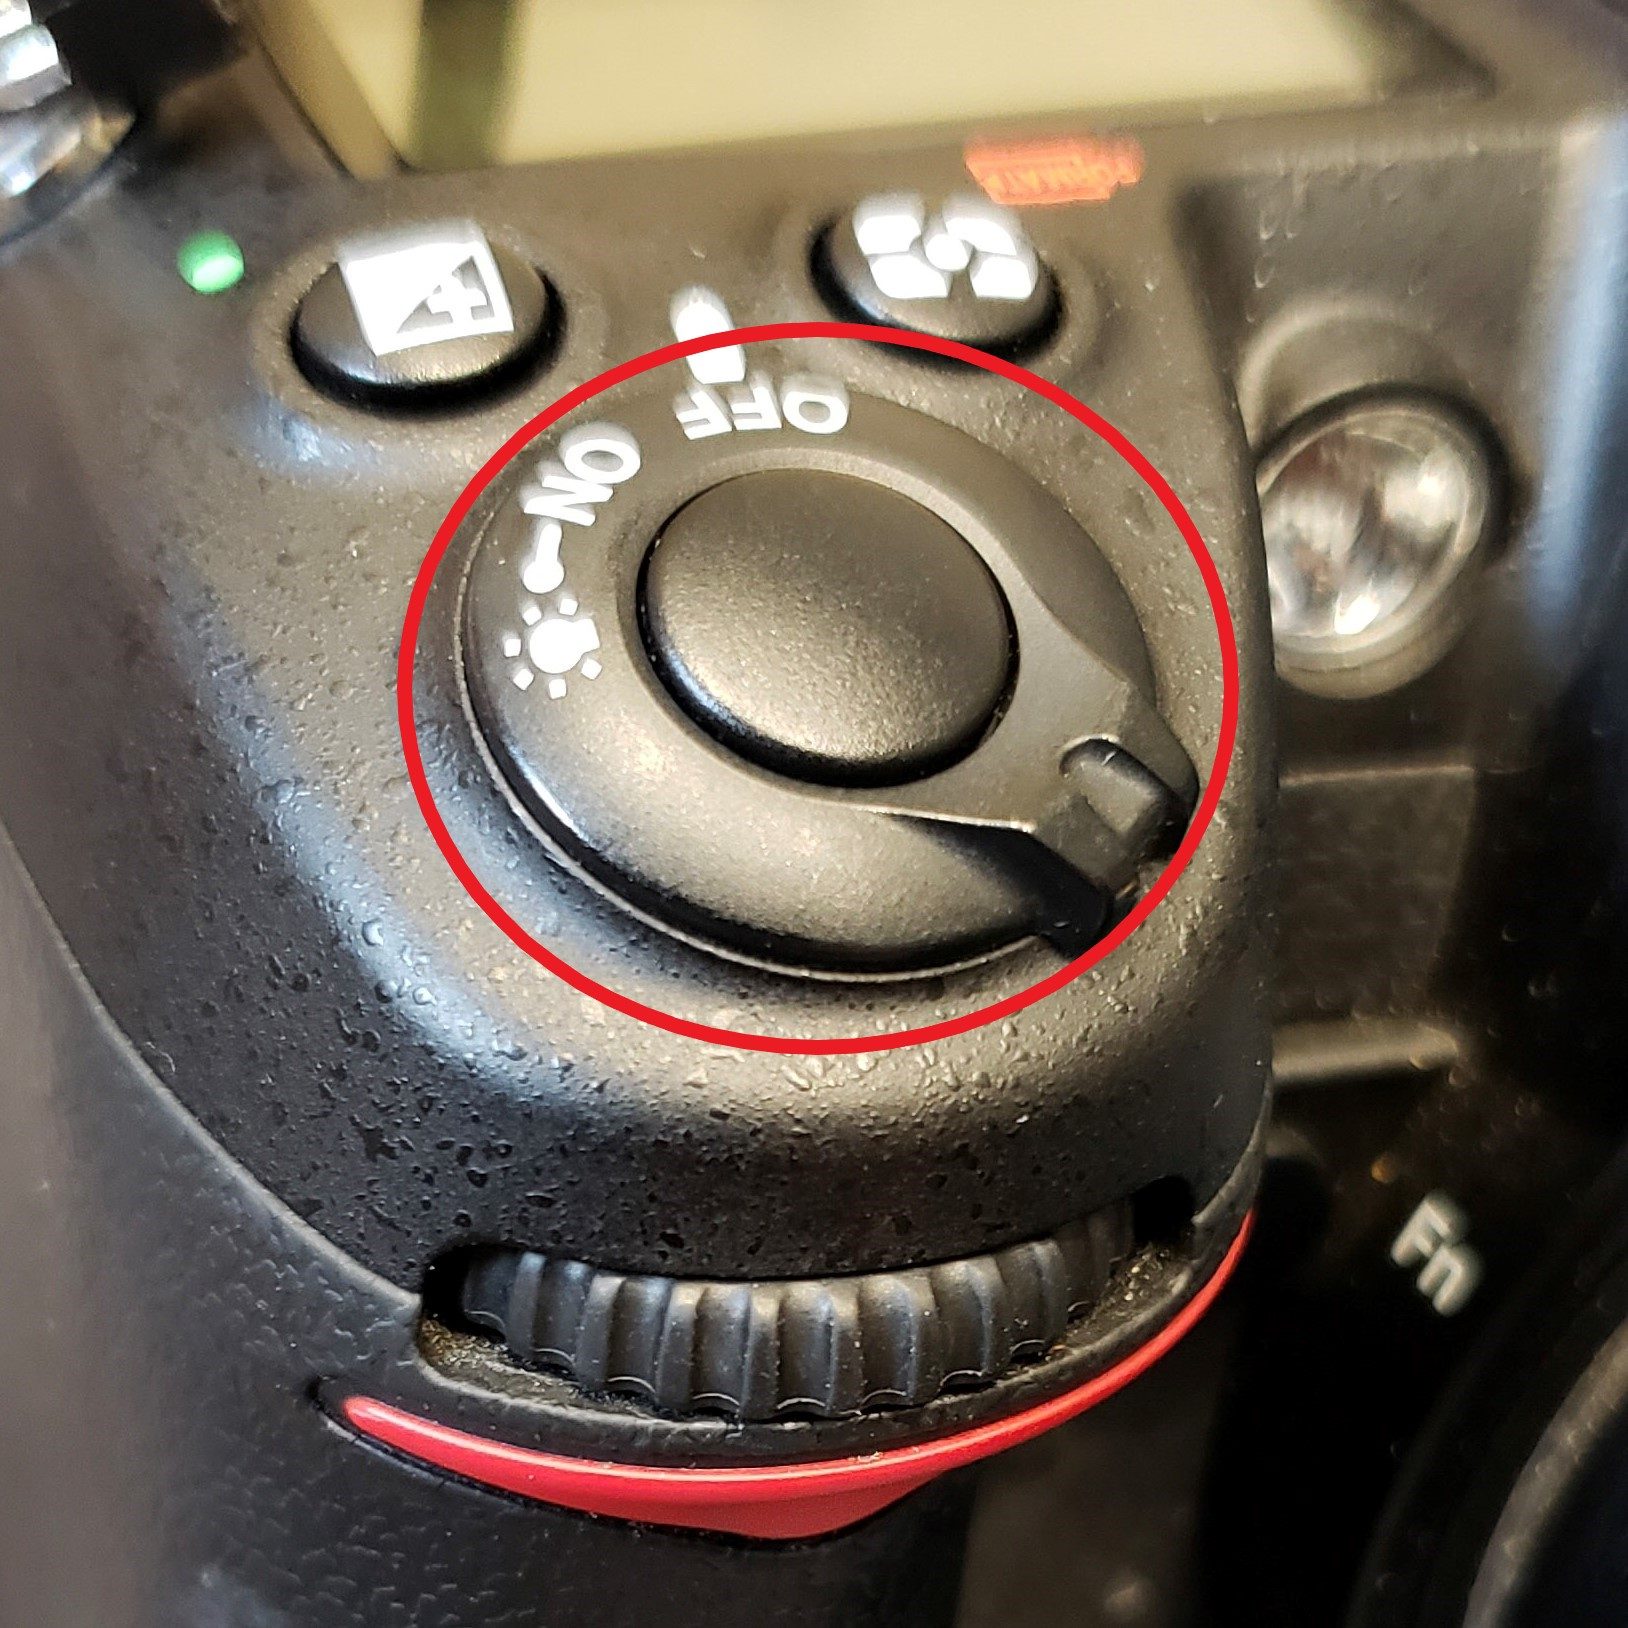 shutter release button, DSLR camera, picture button